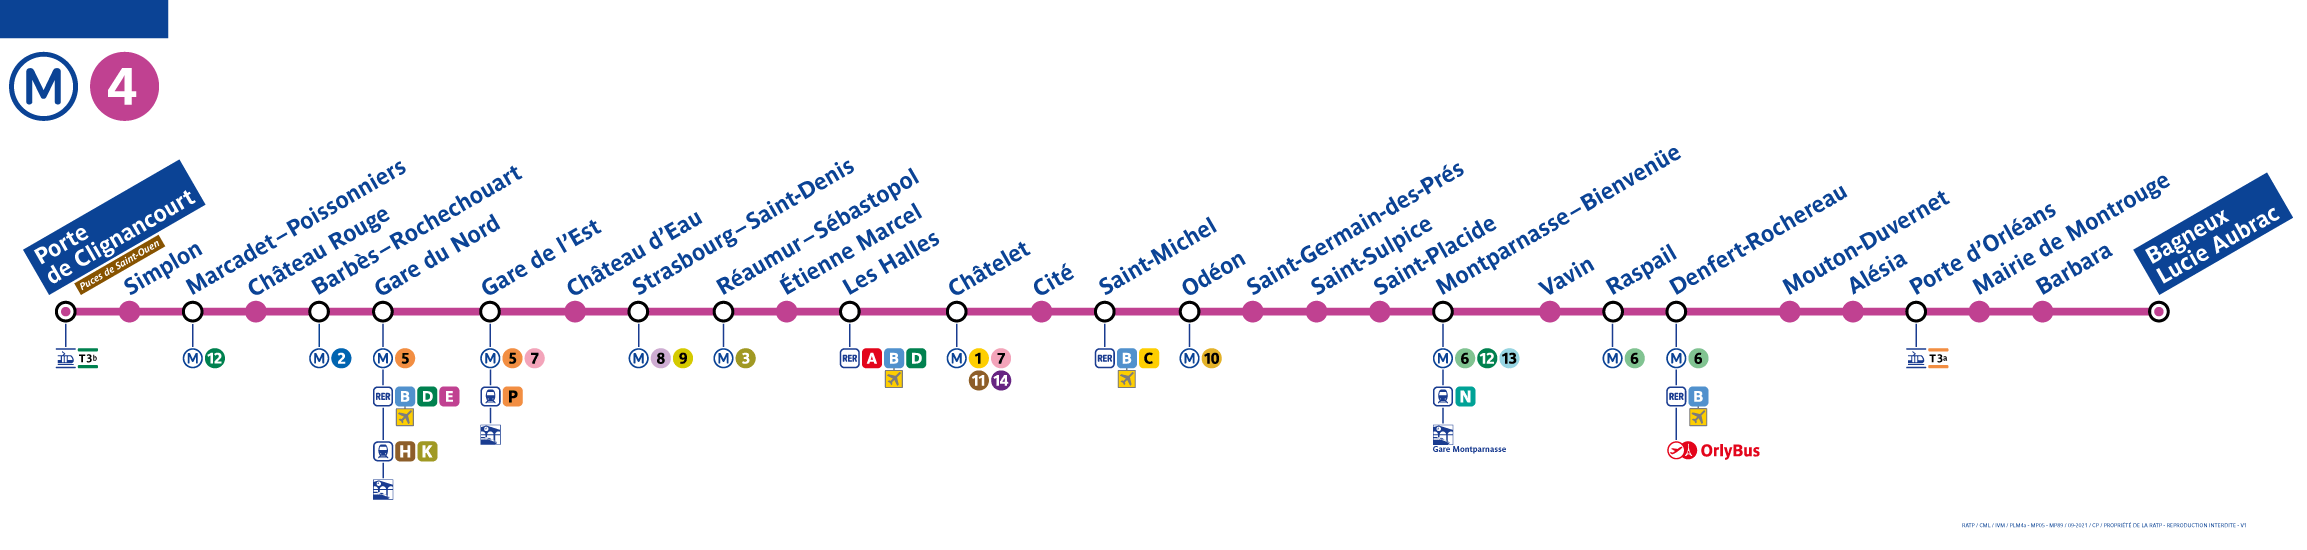 Paris metro line 4 map - Paris Metro Map